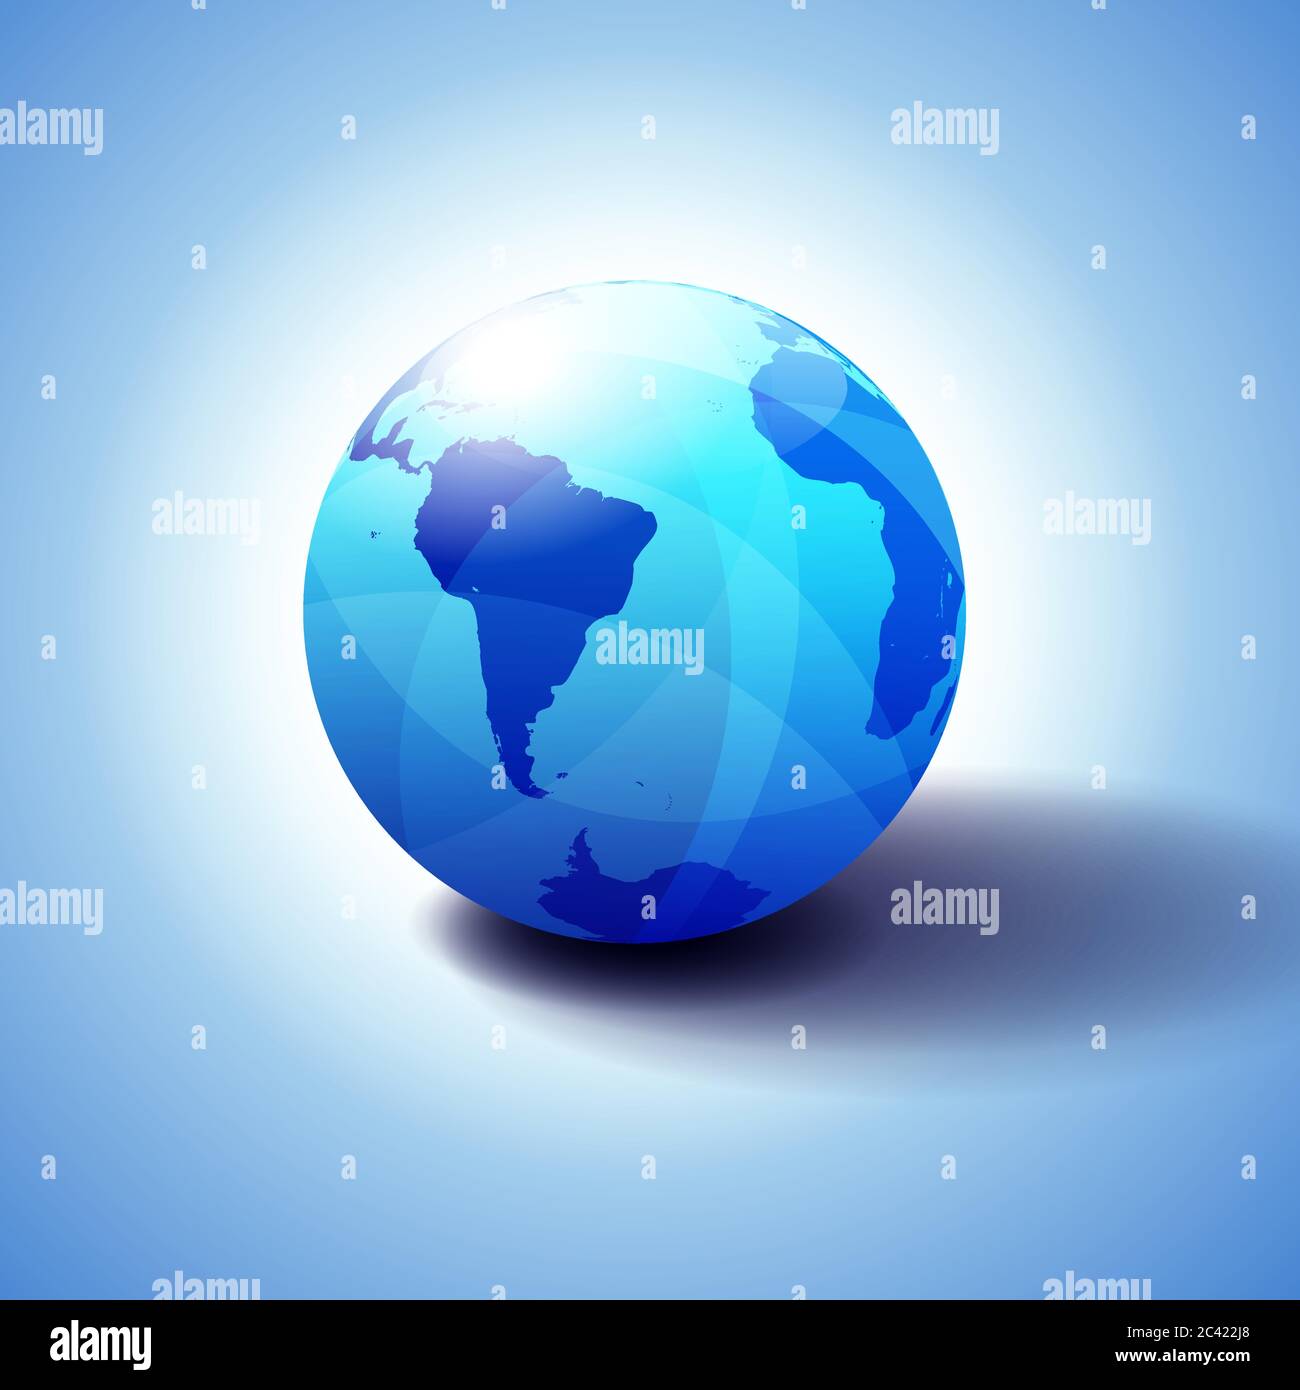 Südamerika und Afrika Global World Globe Icon 3D-Illustration, glänzende, glänzende Kugel mit Global Map in subtilen Blues, die ein transparentes Gefühl gibt Stock Vektor